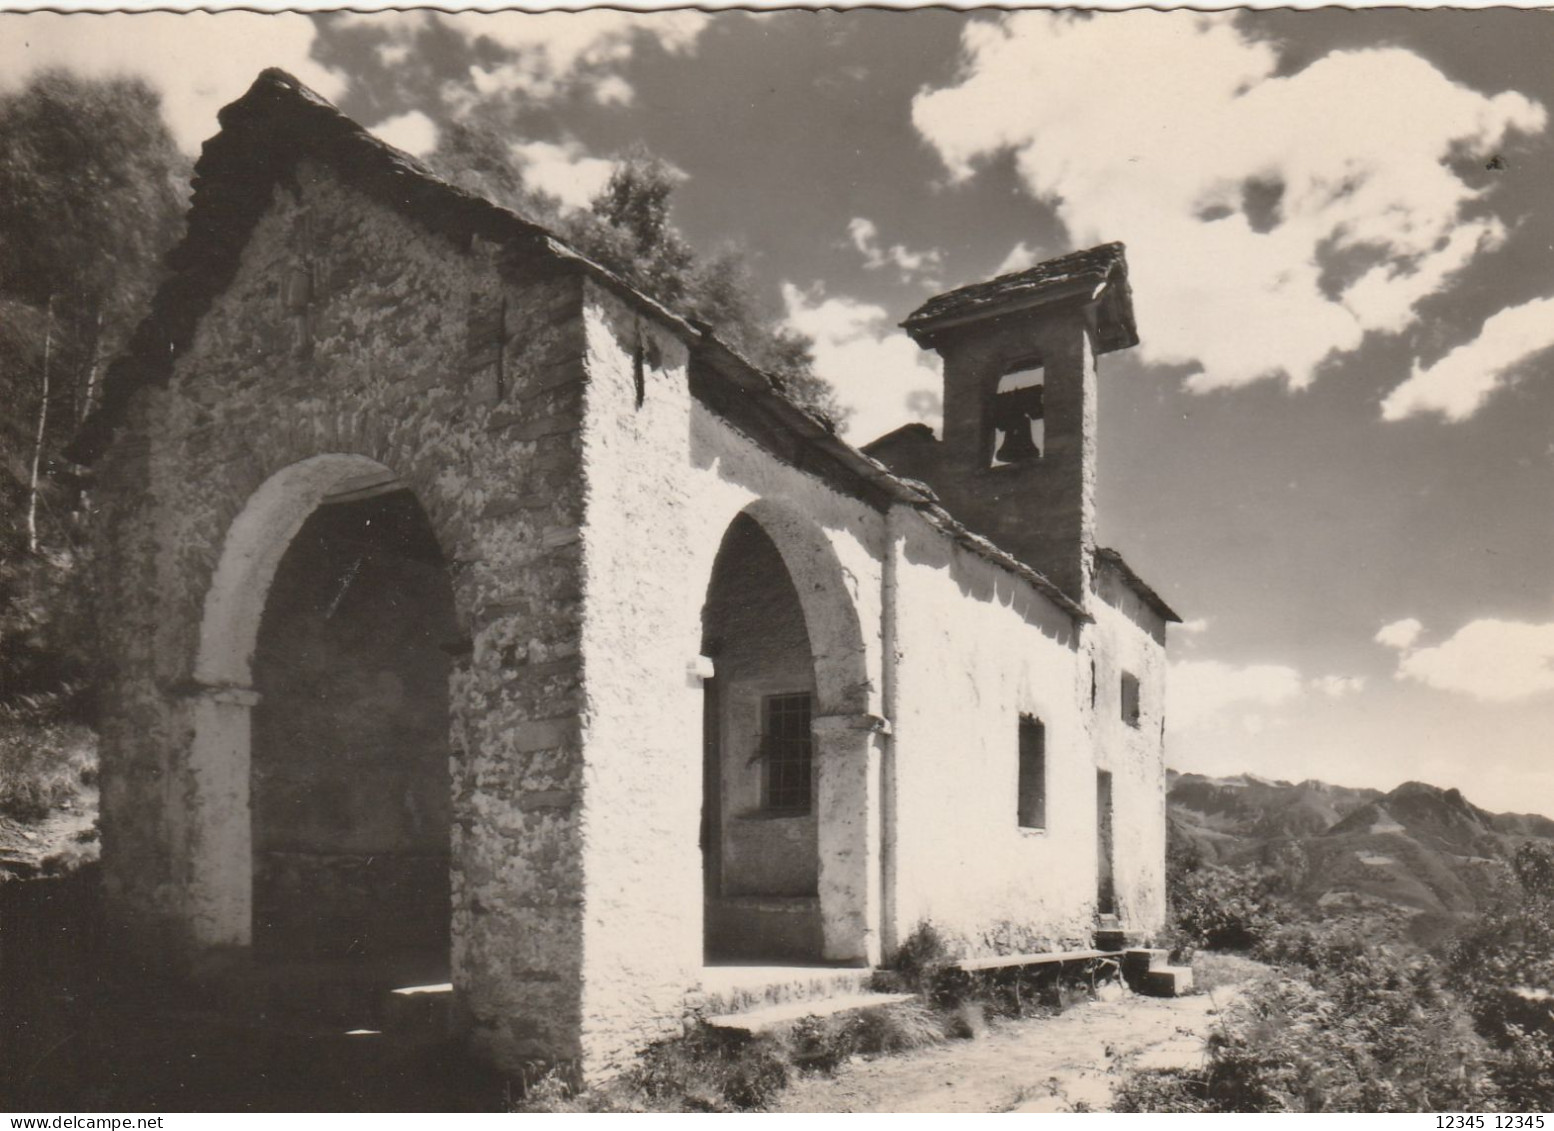 Cappella San Bernardo S/Locarno - Locarno